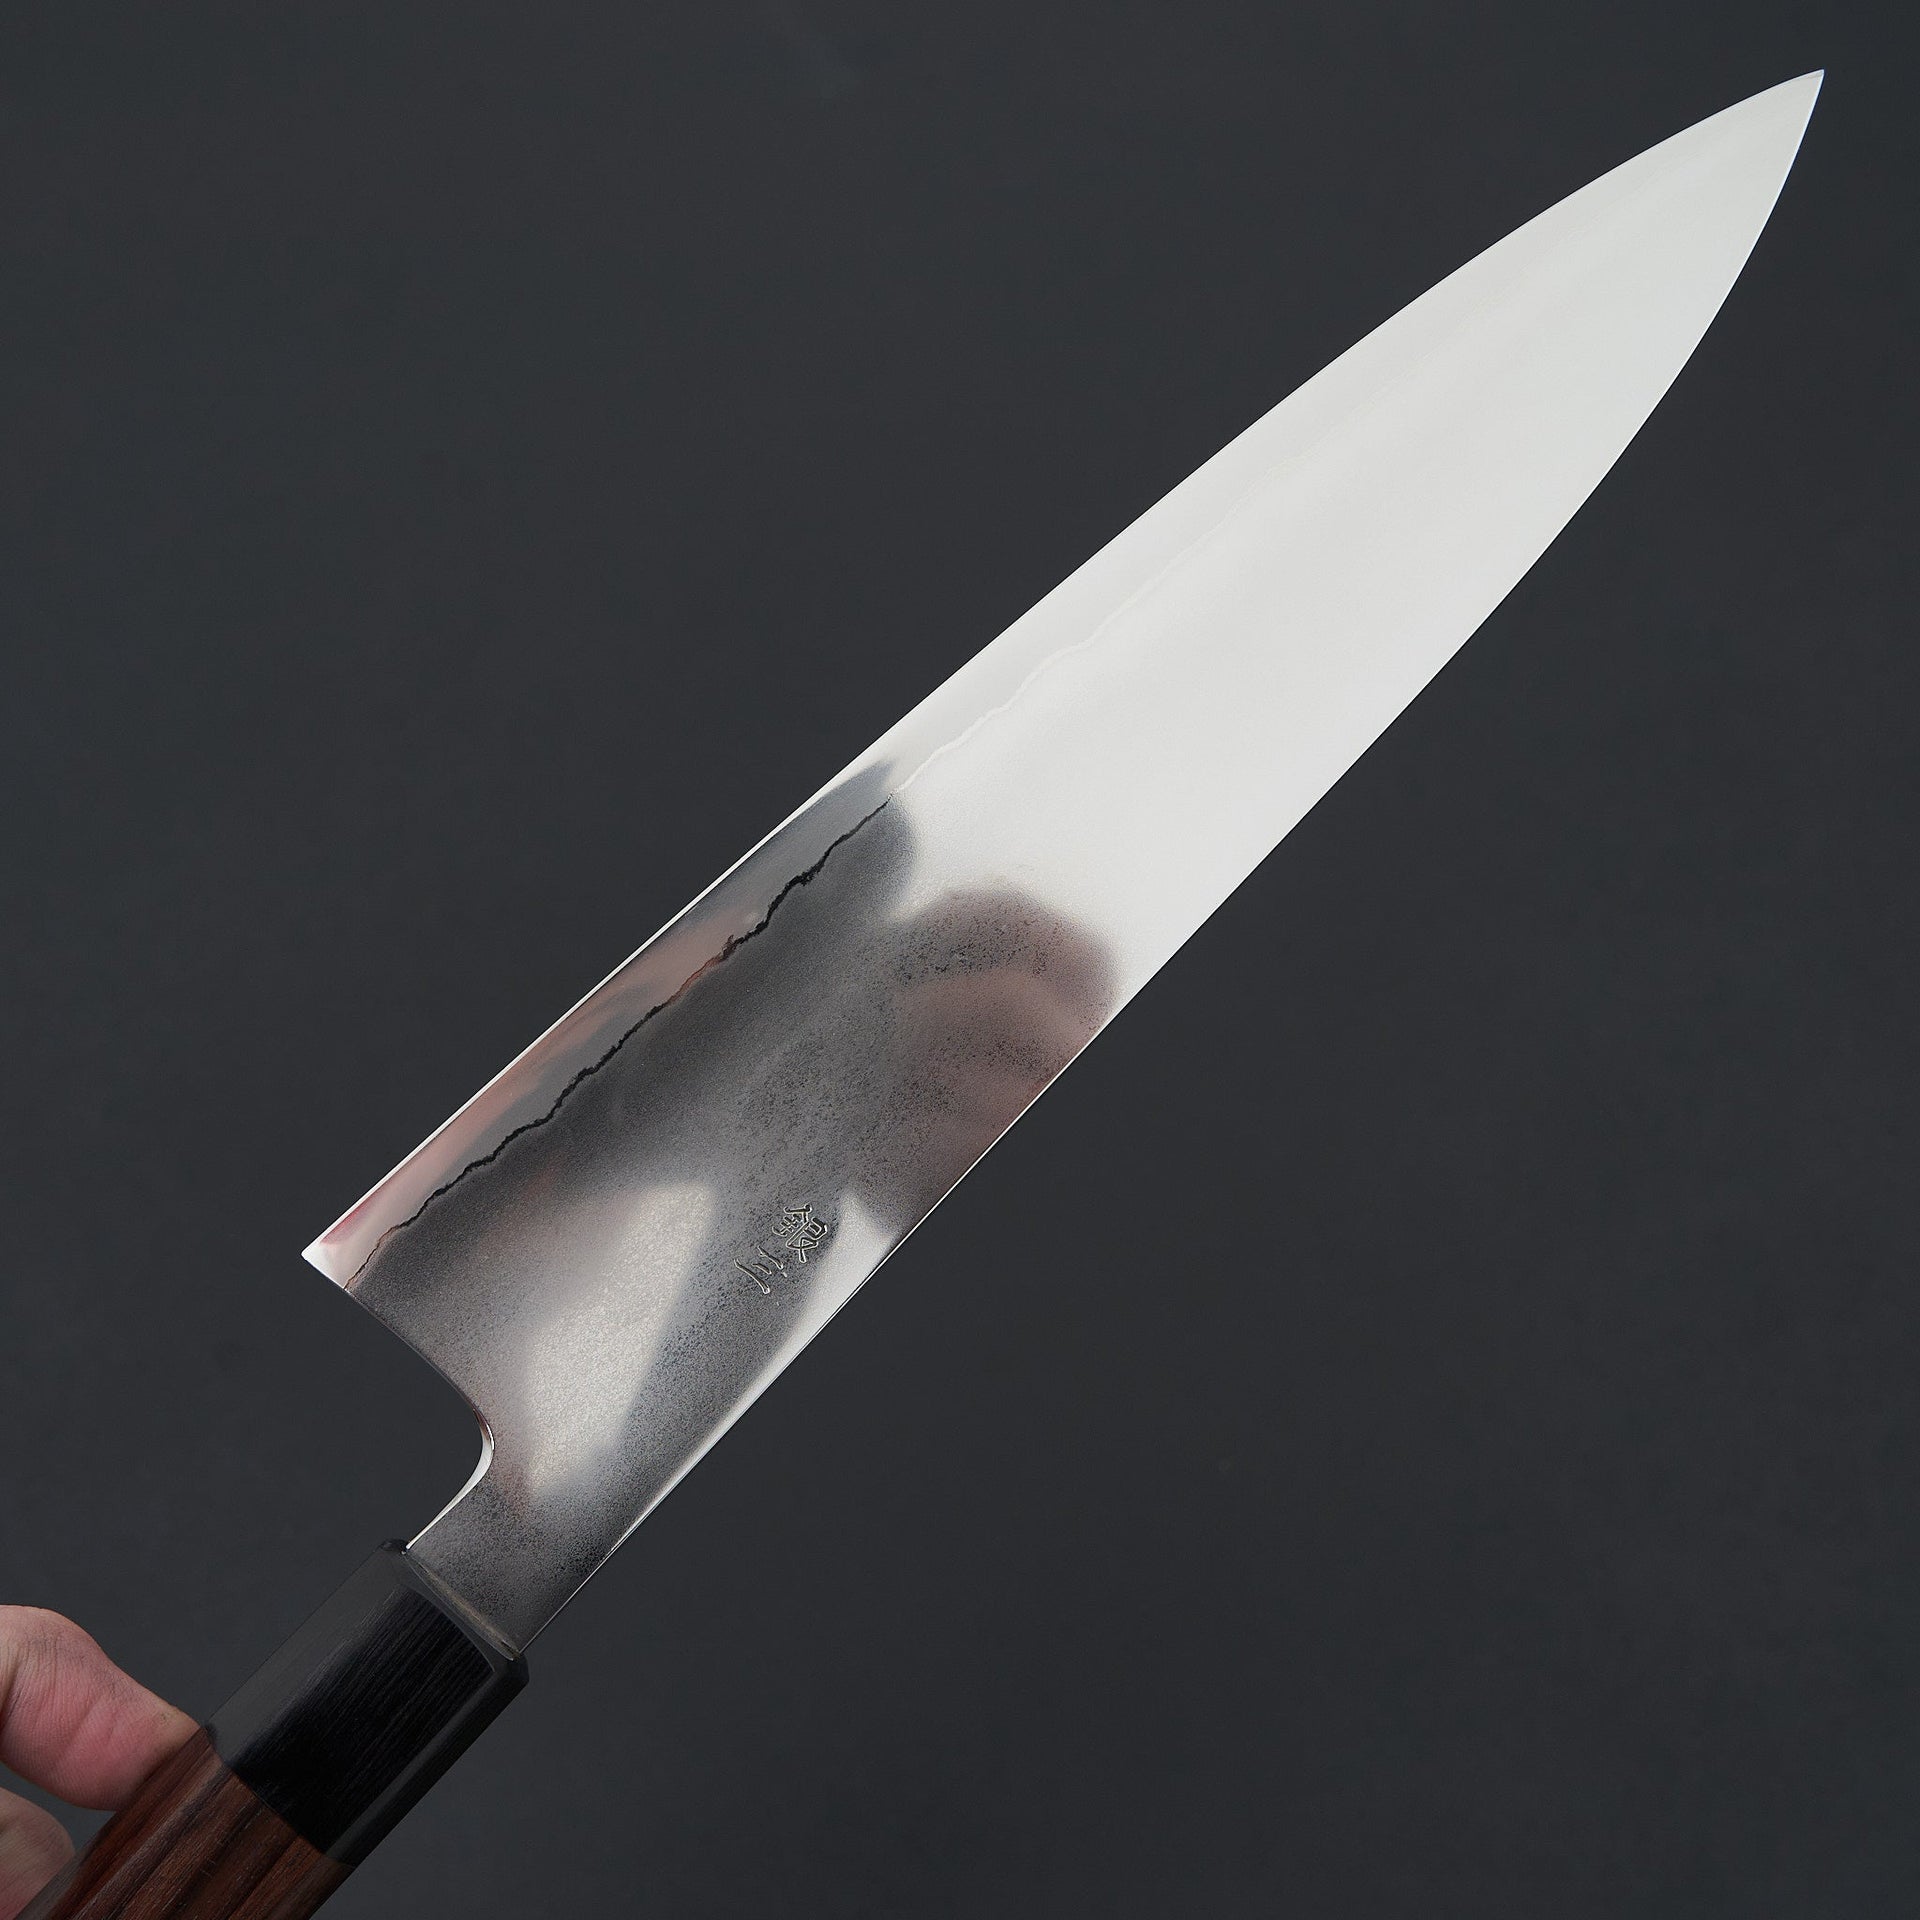 Takada no Hamono Suiboku Rosewood Ginsan Gyuto 240mm-Knife-Takada no Hamono-Carbon Knife Co